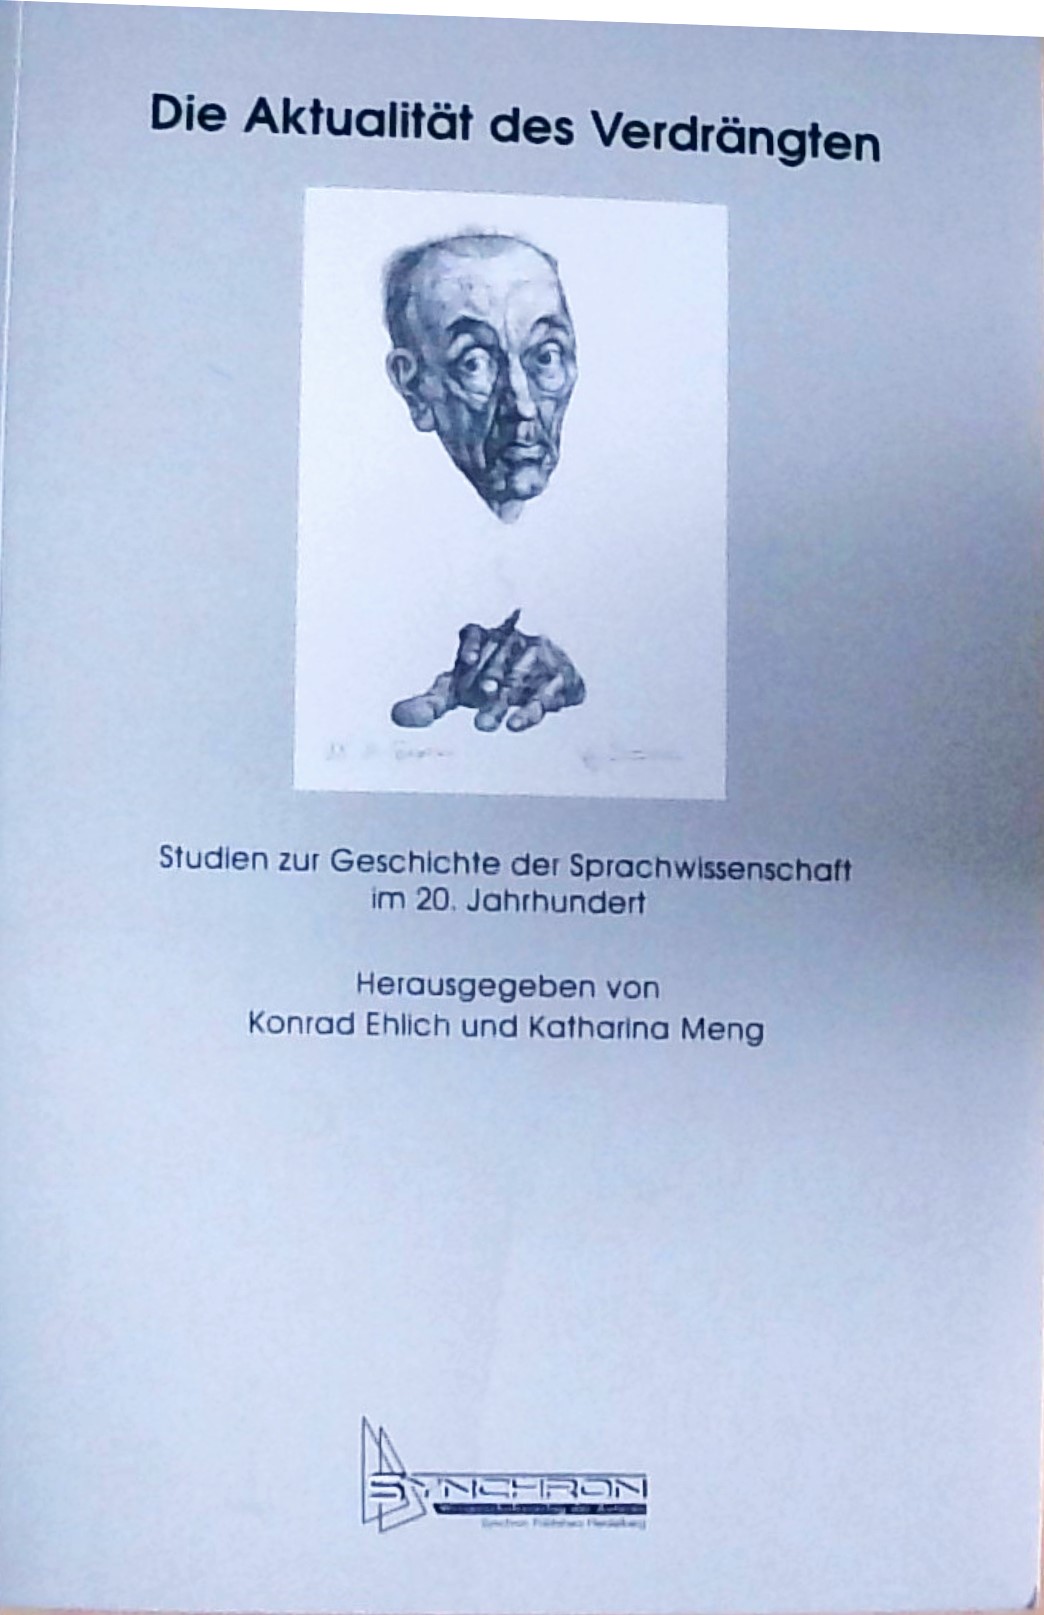 Die Aktualität des Verdrängten Studien zur Sprachwissenschaft im 20. Jahrhundert - Ehlich, Konrad und Katharina Meng